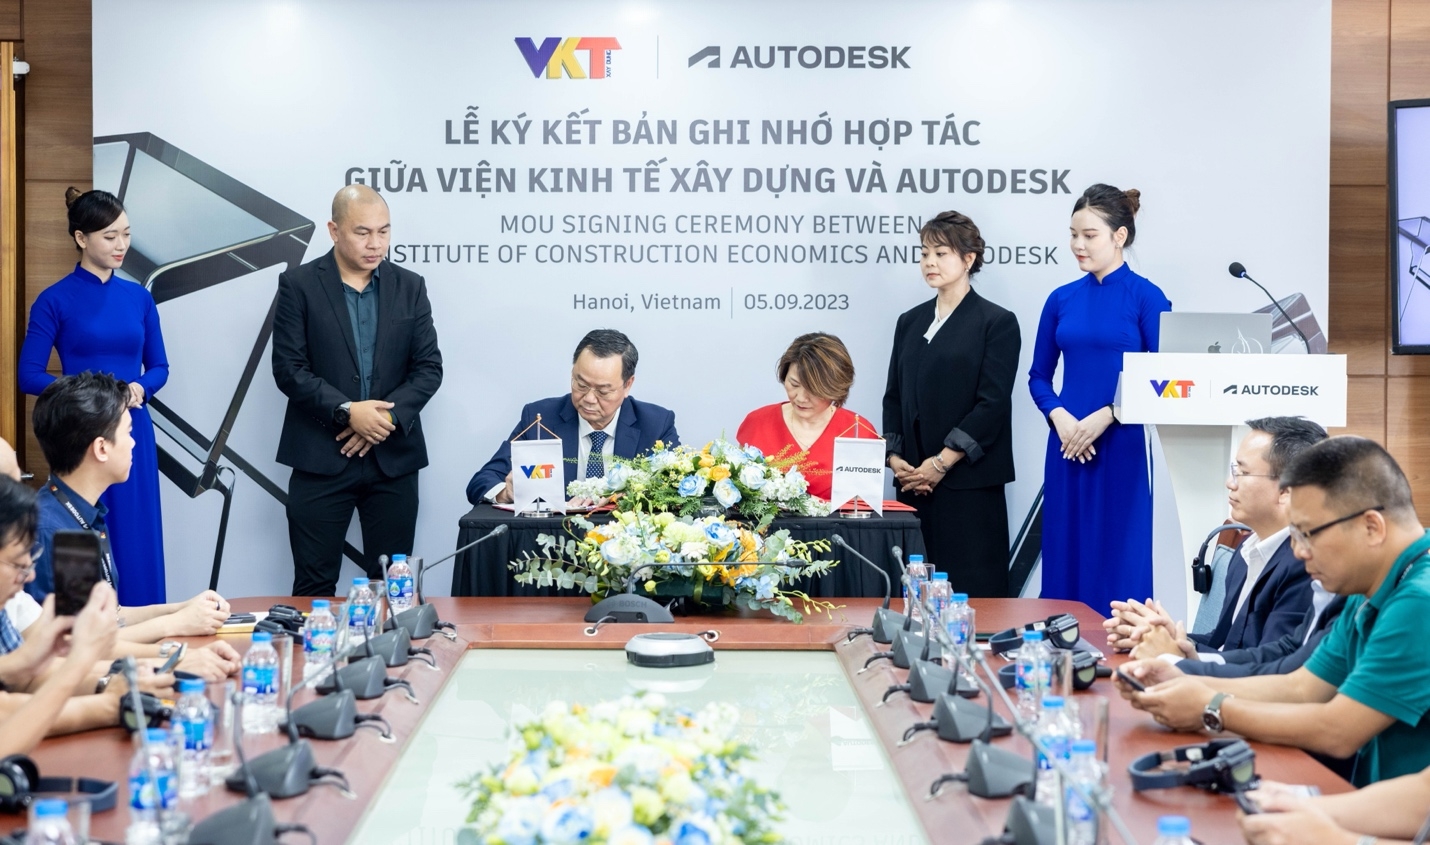 Viện Kinh tế Xây dựng và Autodesk hợp tác chuyển đổi số và ứng dụng Bim trong ngành Xây dựng tại Việt Nam